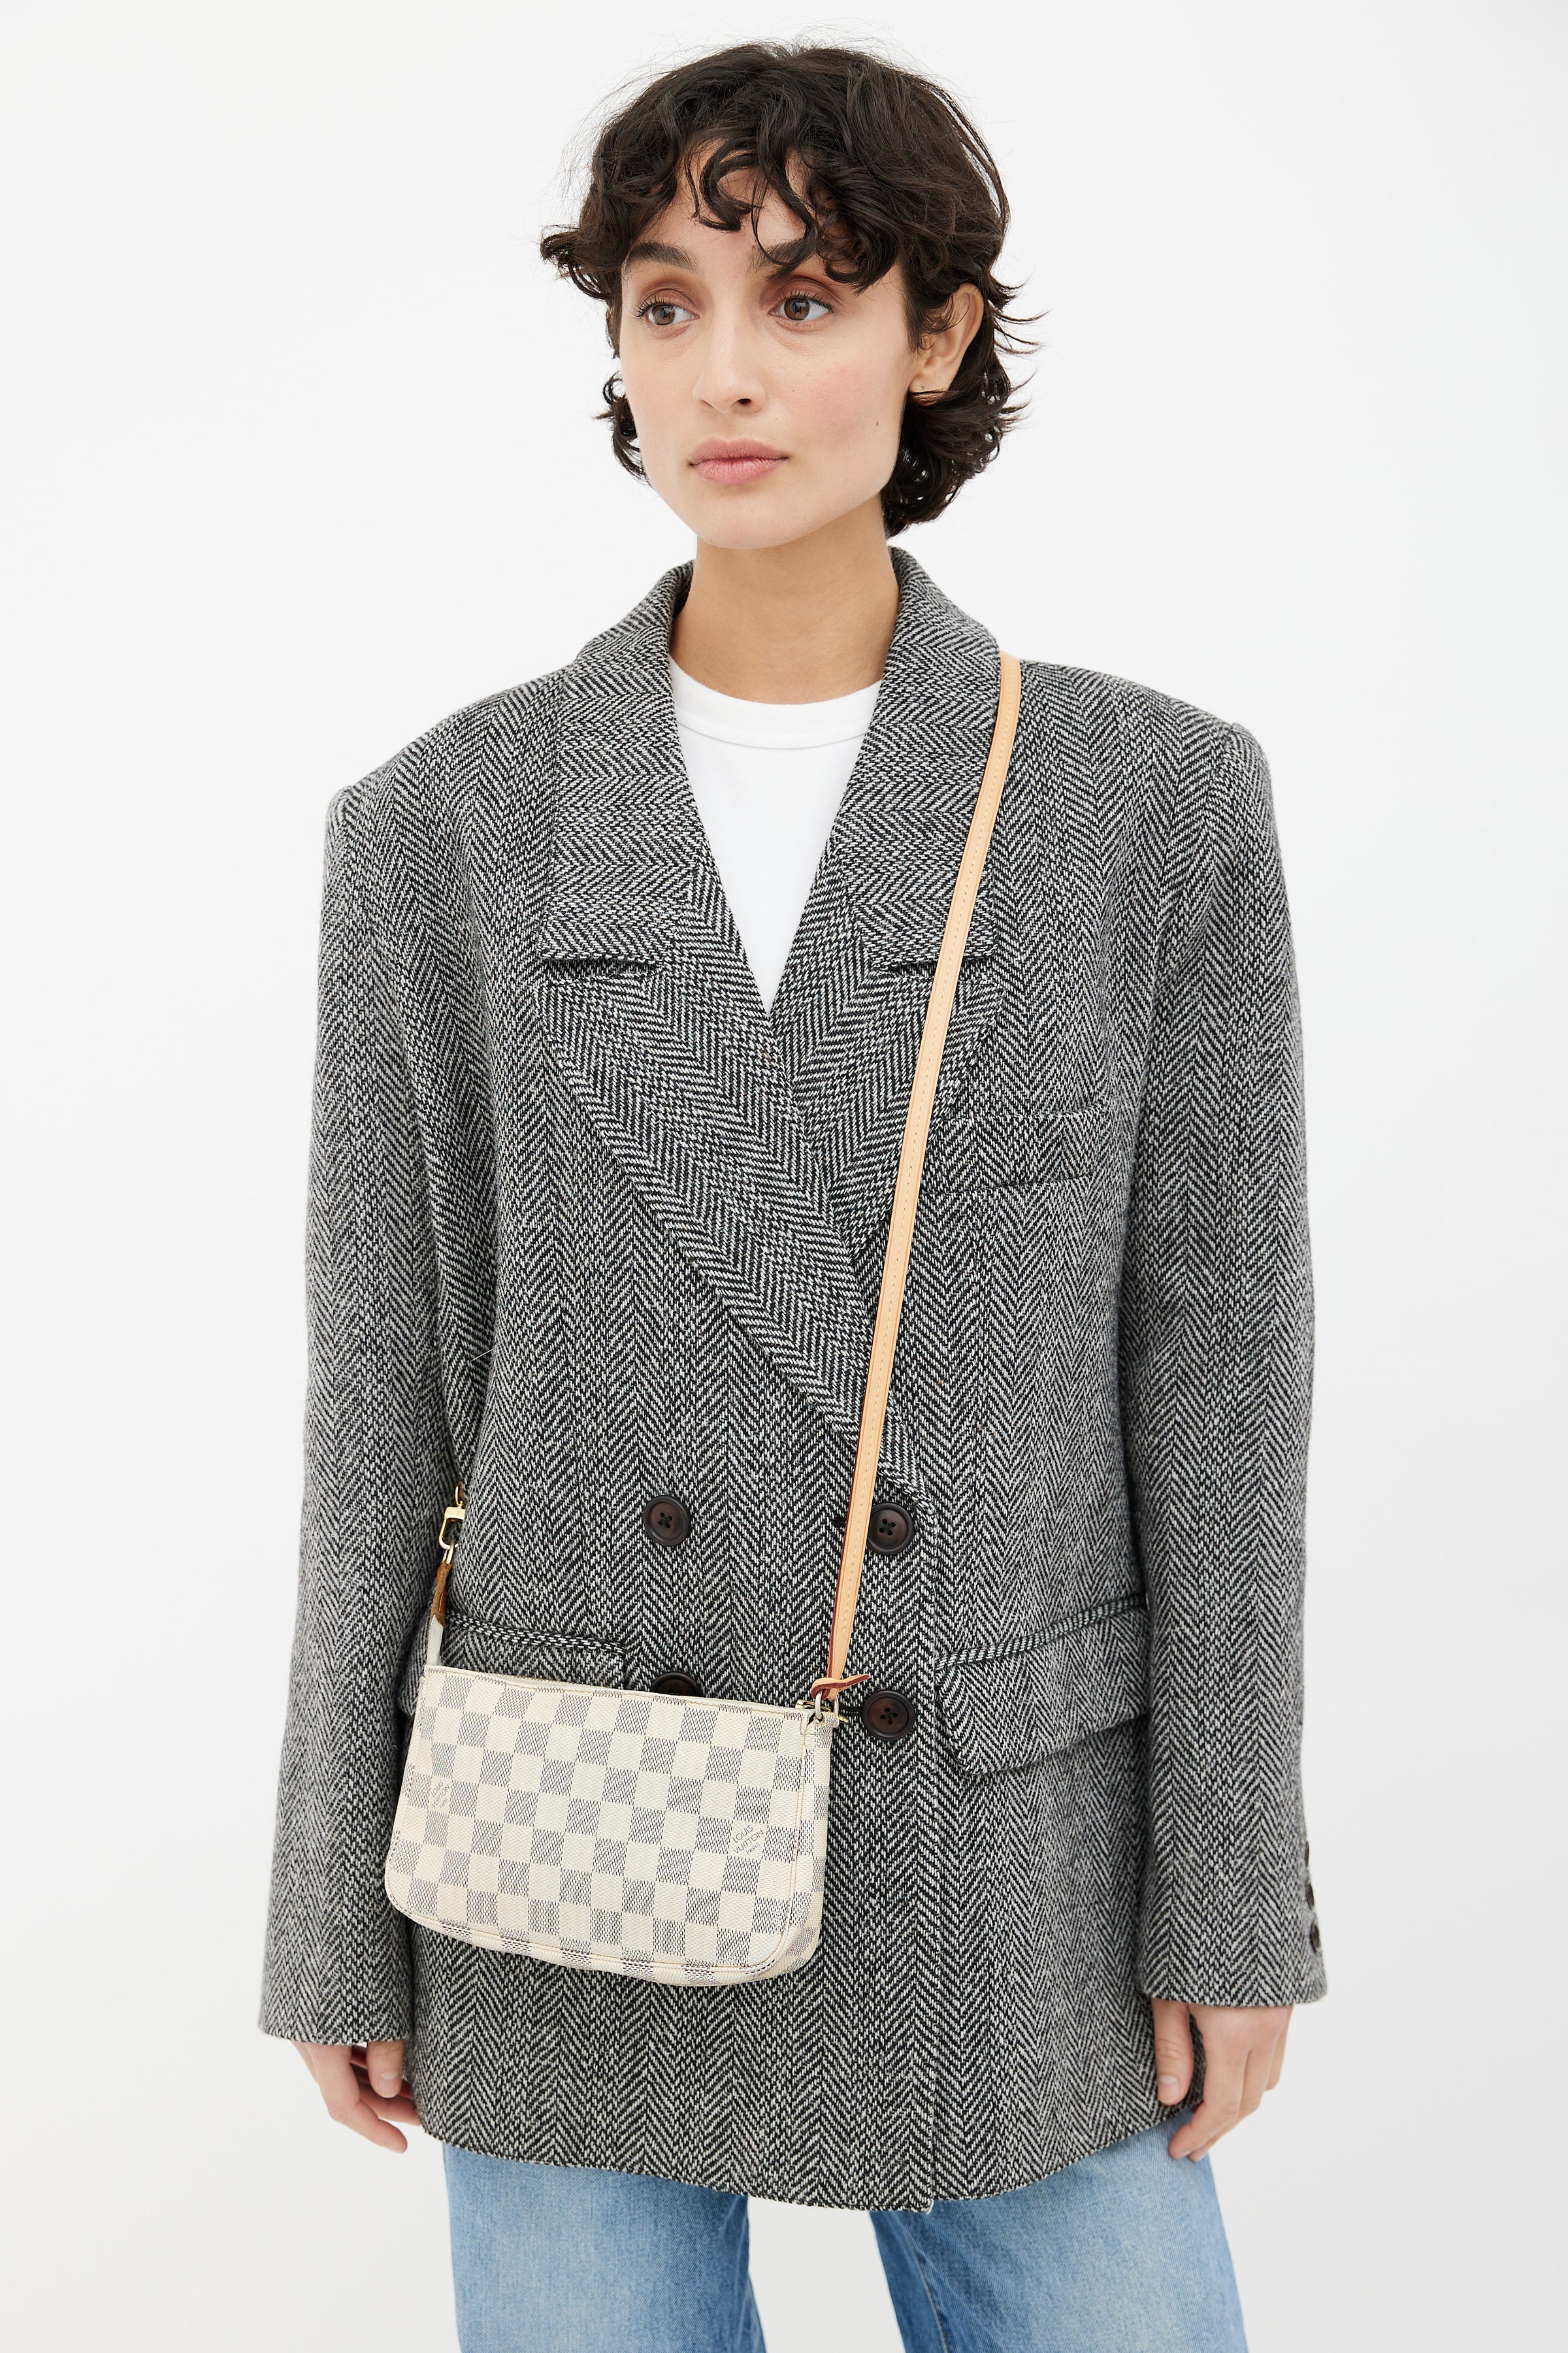 Louis Vuitton // Cream Damier Azur Pochette Accessoires Bag – VSP  Consignment